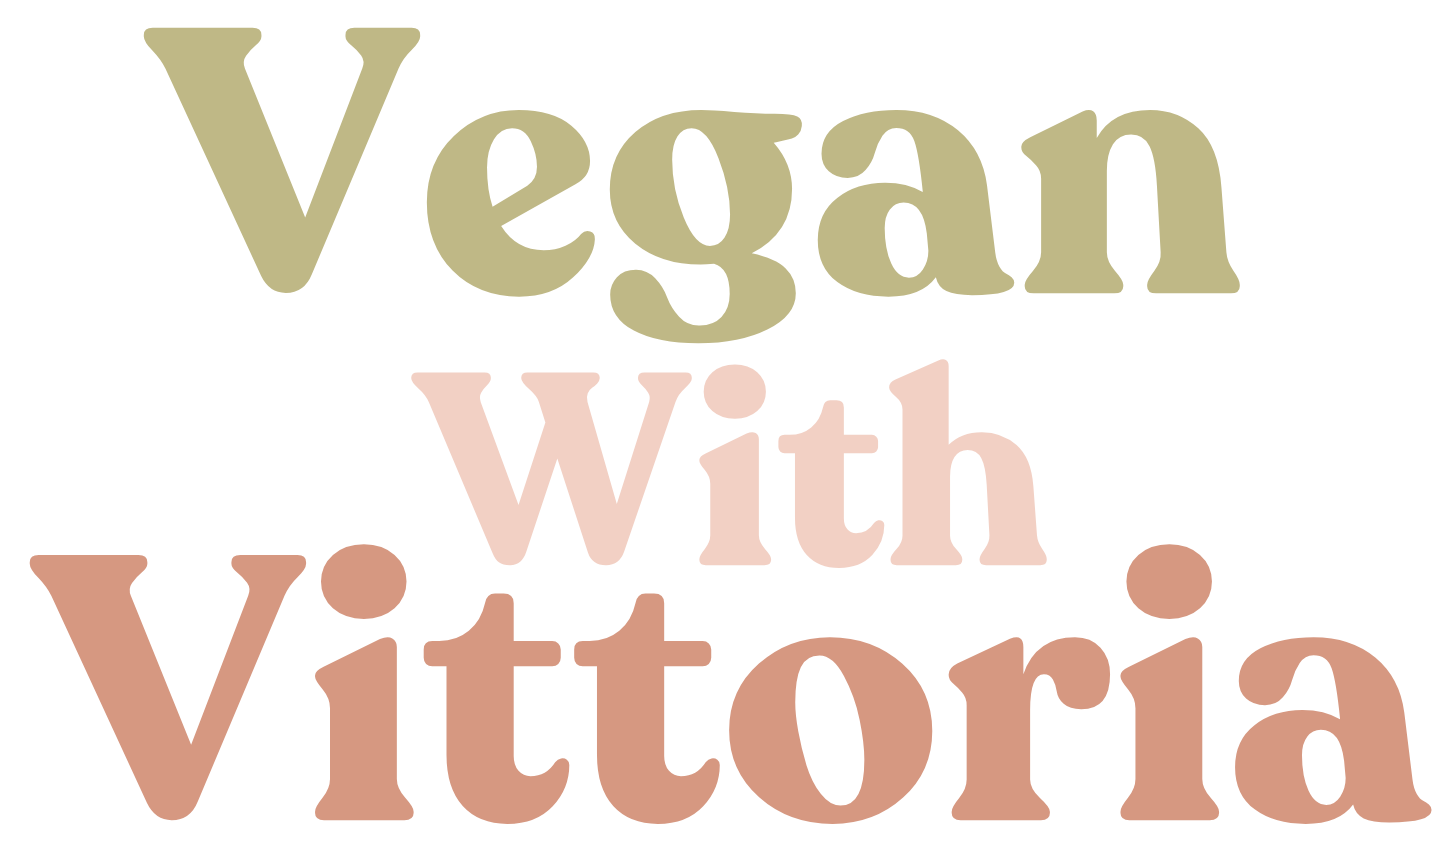 Vegan With Vittoria